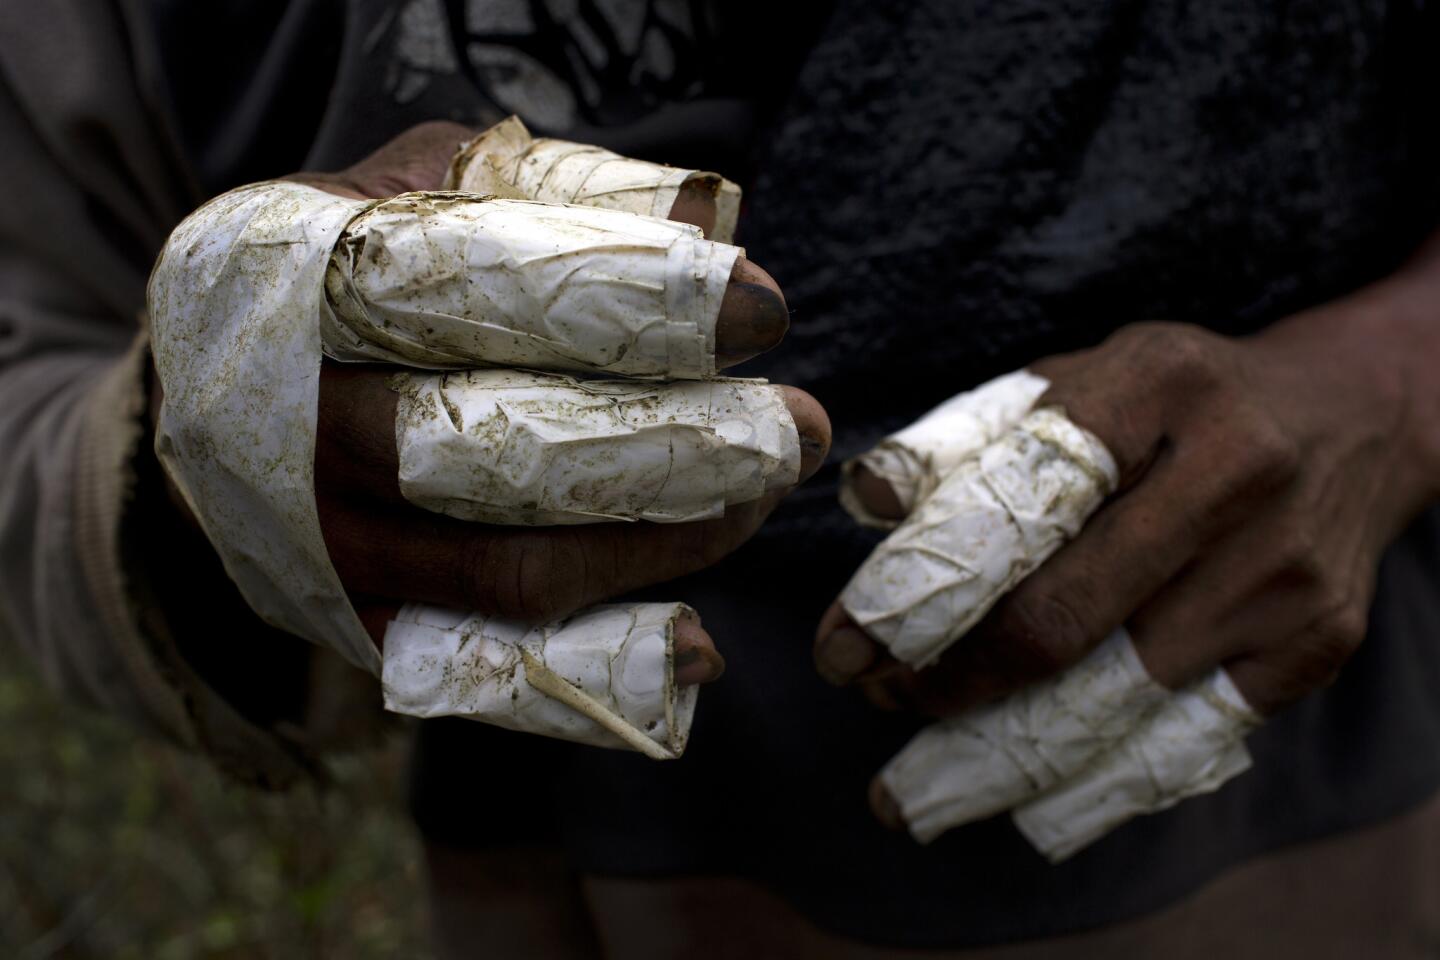 Los dedos del recolector de coca Walter Pérez envueltos en cinta como medida de protección a la hora de retirar la hoja de coca de las ramas. Los recolectores ganan unos 33 centavos por kilo (2,2 libras) de hoja de coca, con lo que de media obtienen unos 16 dólares por día de trabajo.